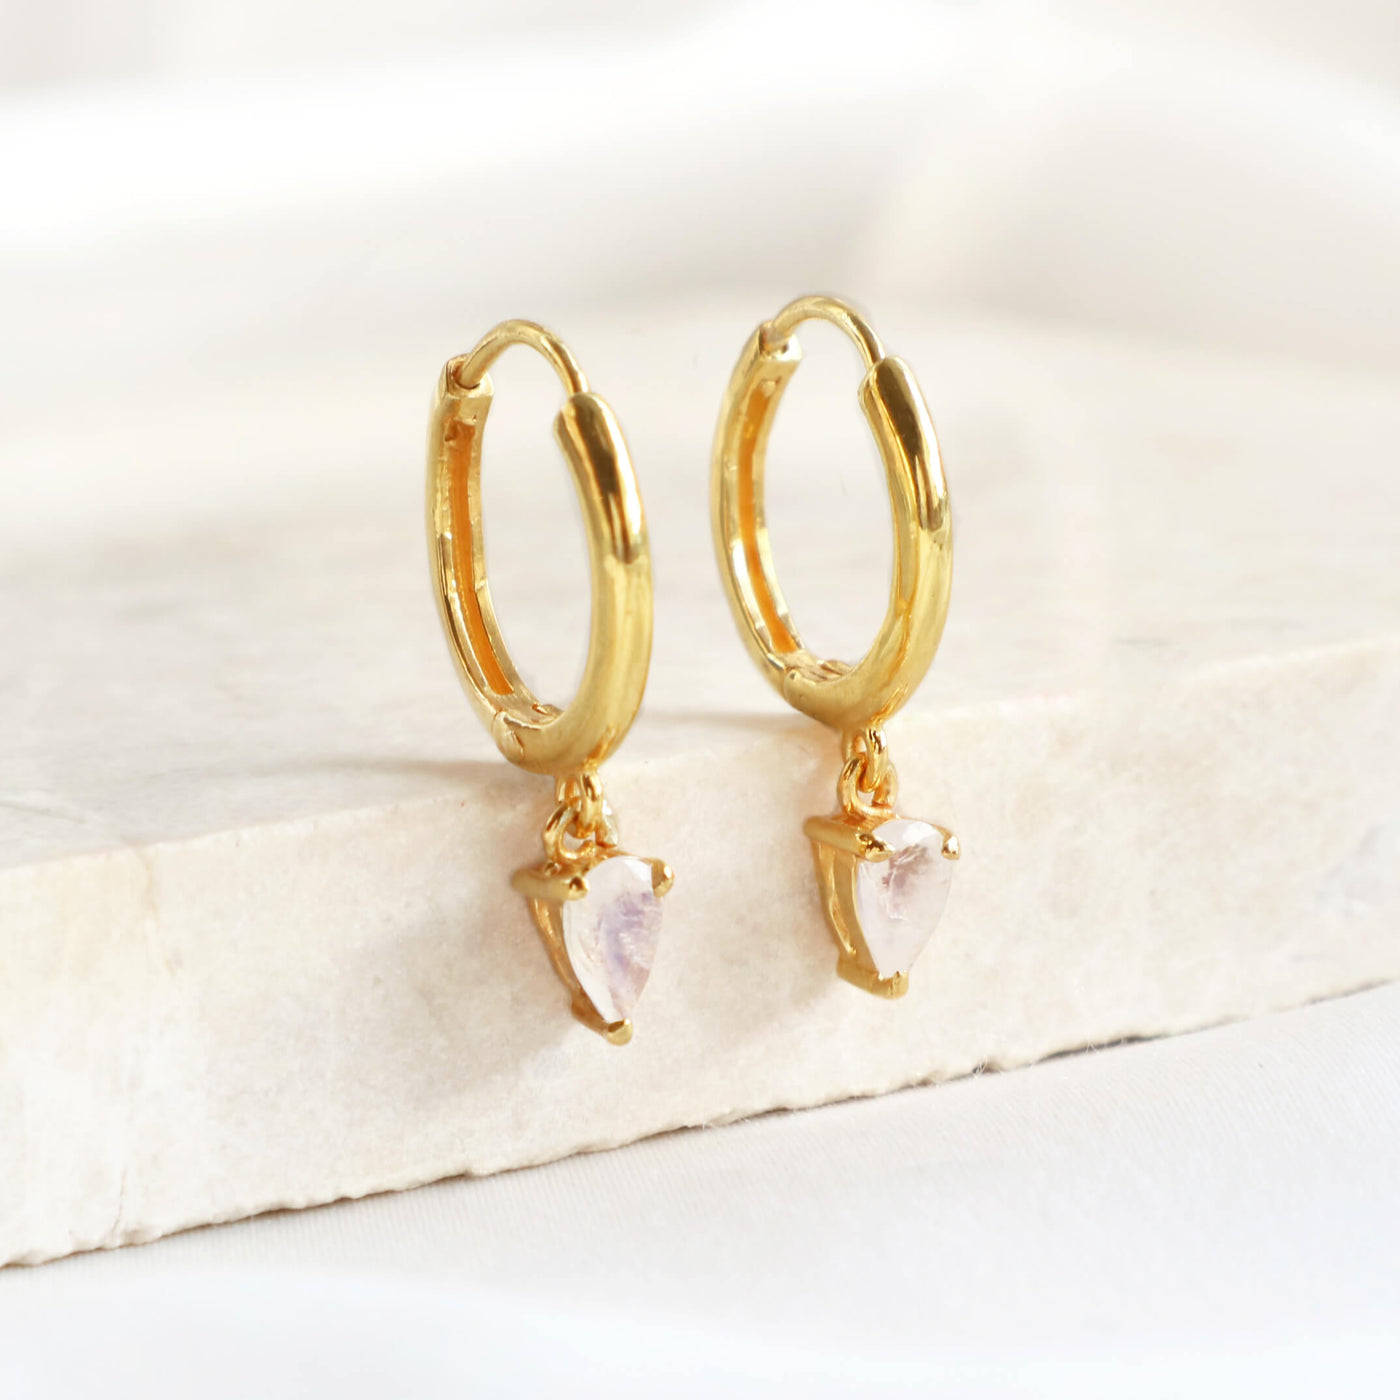 Moonstone Charm Hoop Earrings (Gold)